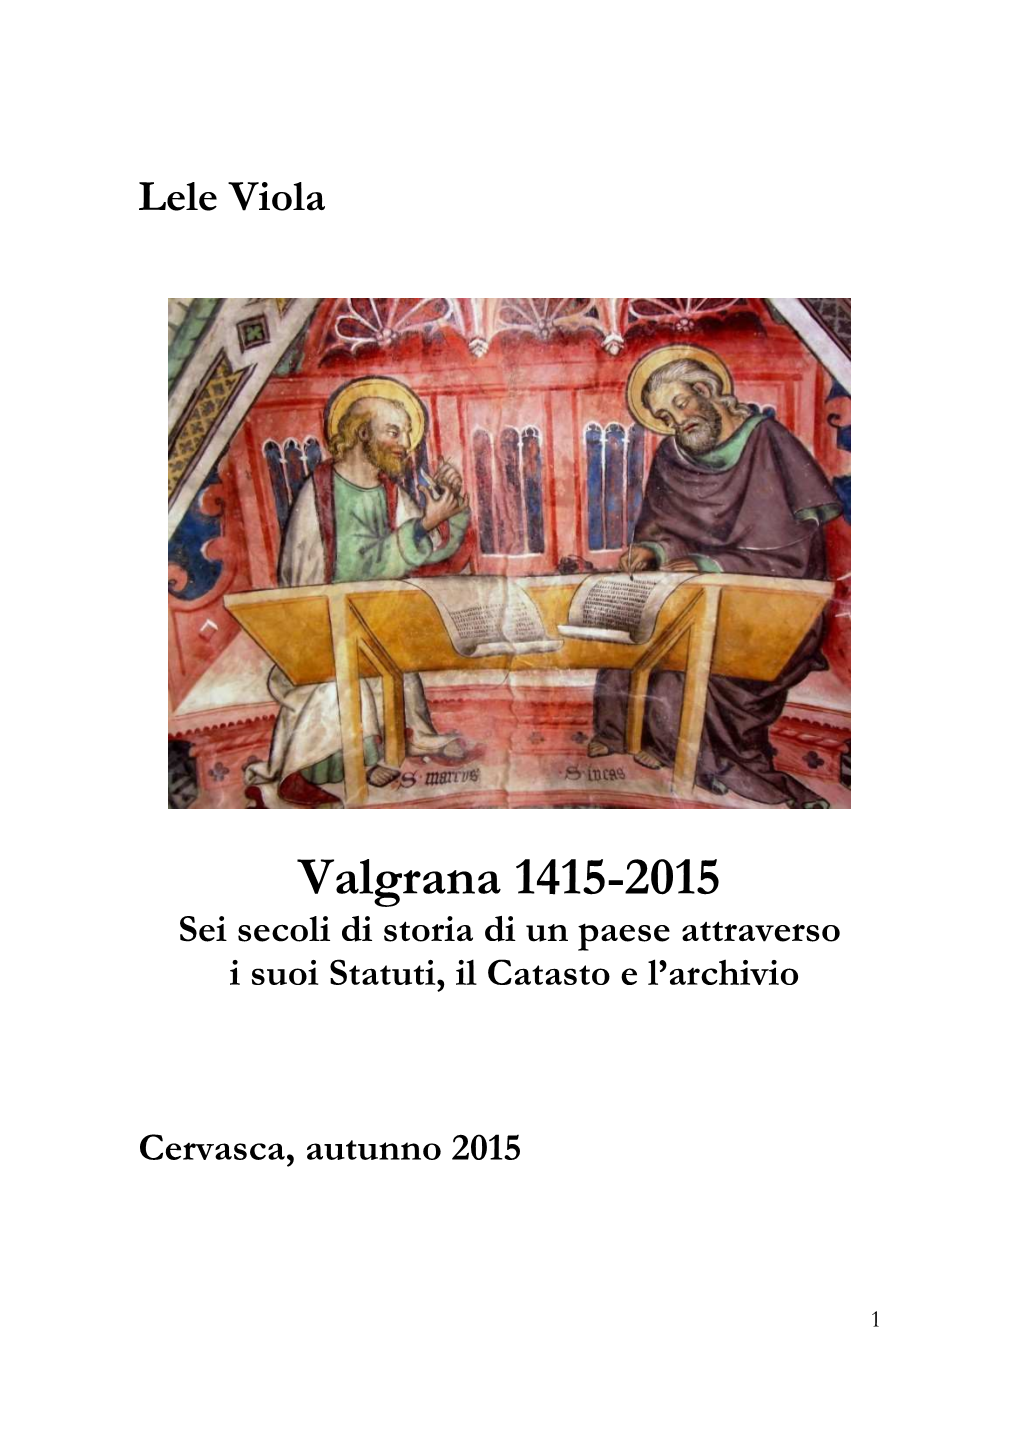 Valgrana, 1415-2015 Sei Secoli Di Storia A5